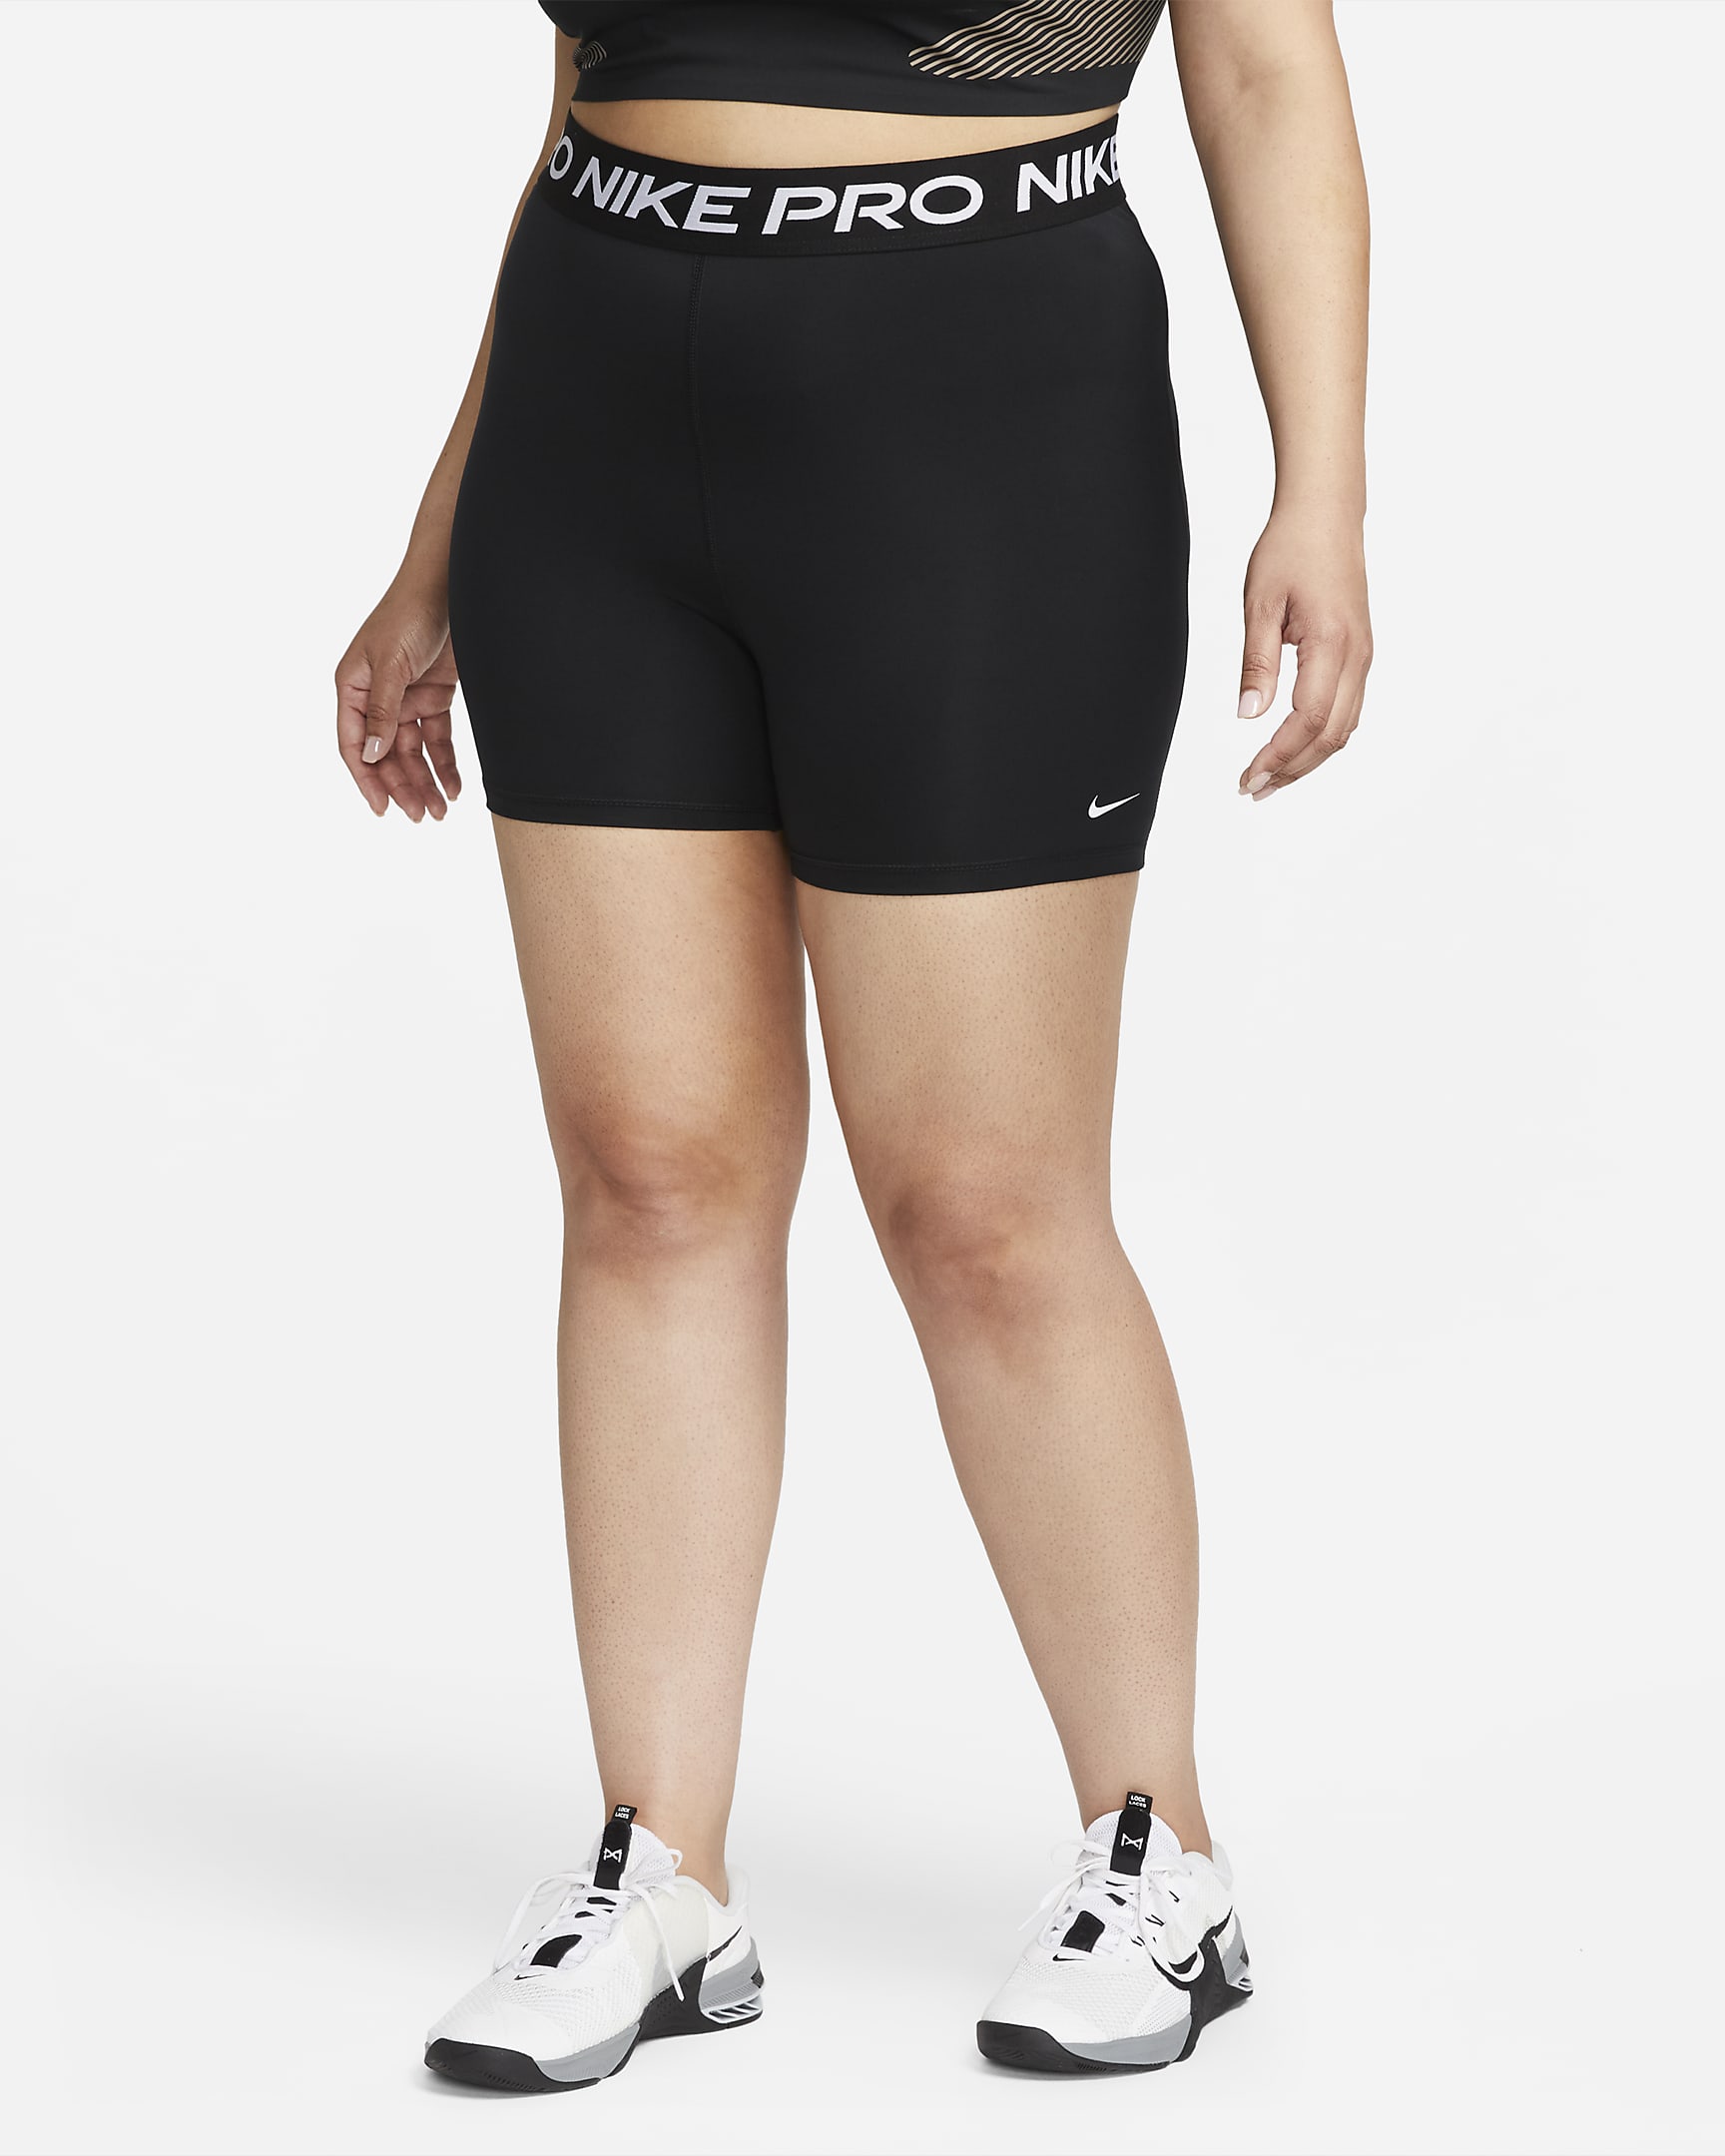 Nike Pro 365 Damenshorts (ca. 12,5 cm) (große Größe) - Schwarz/Weiß